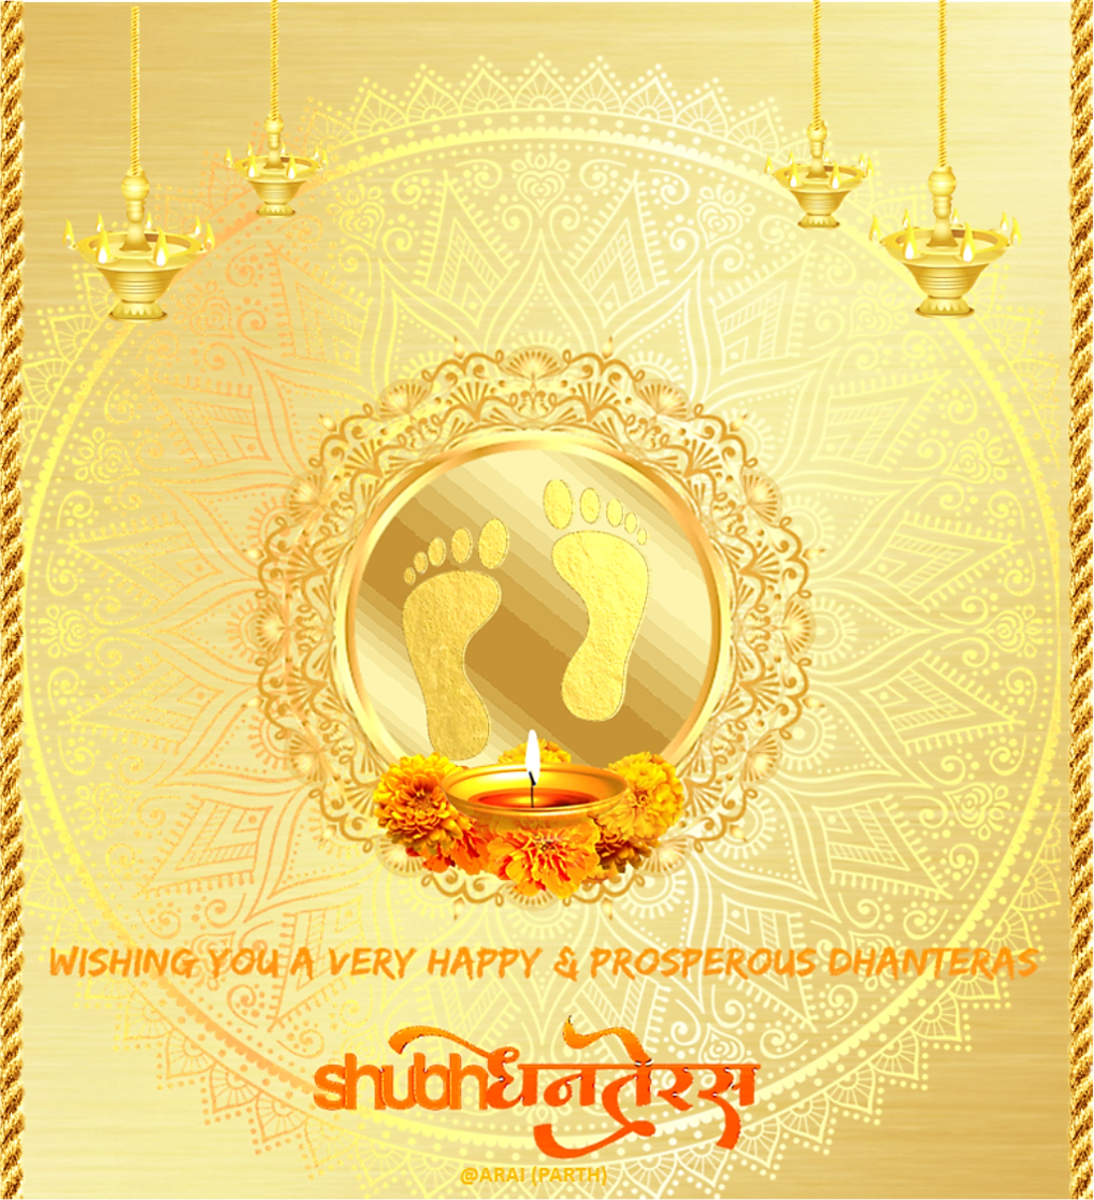 Dhantrayodashi (Dhanteras) Wishes in Marathi Language